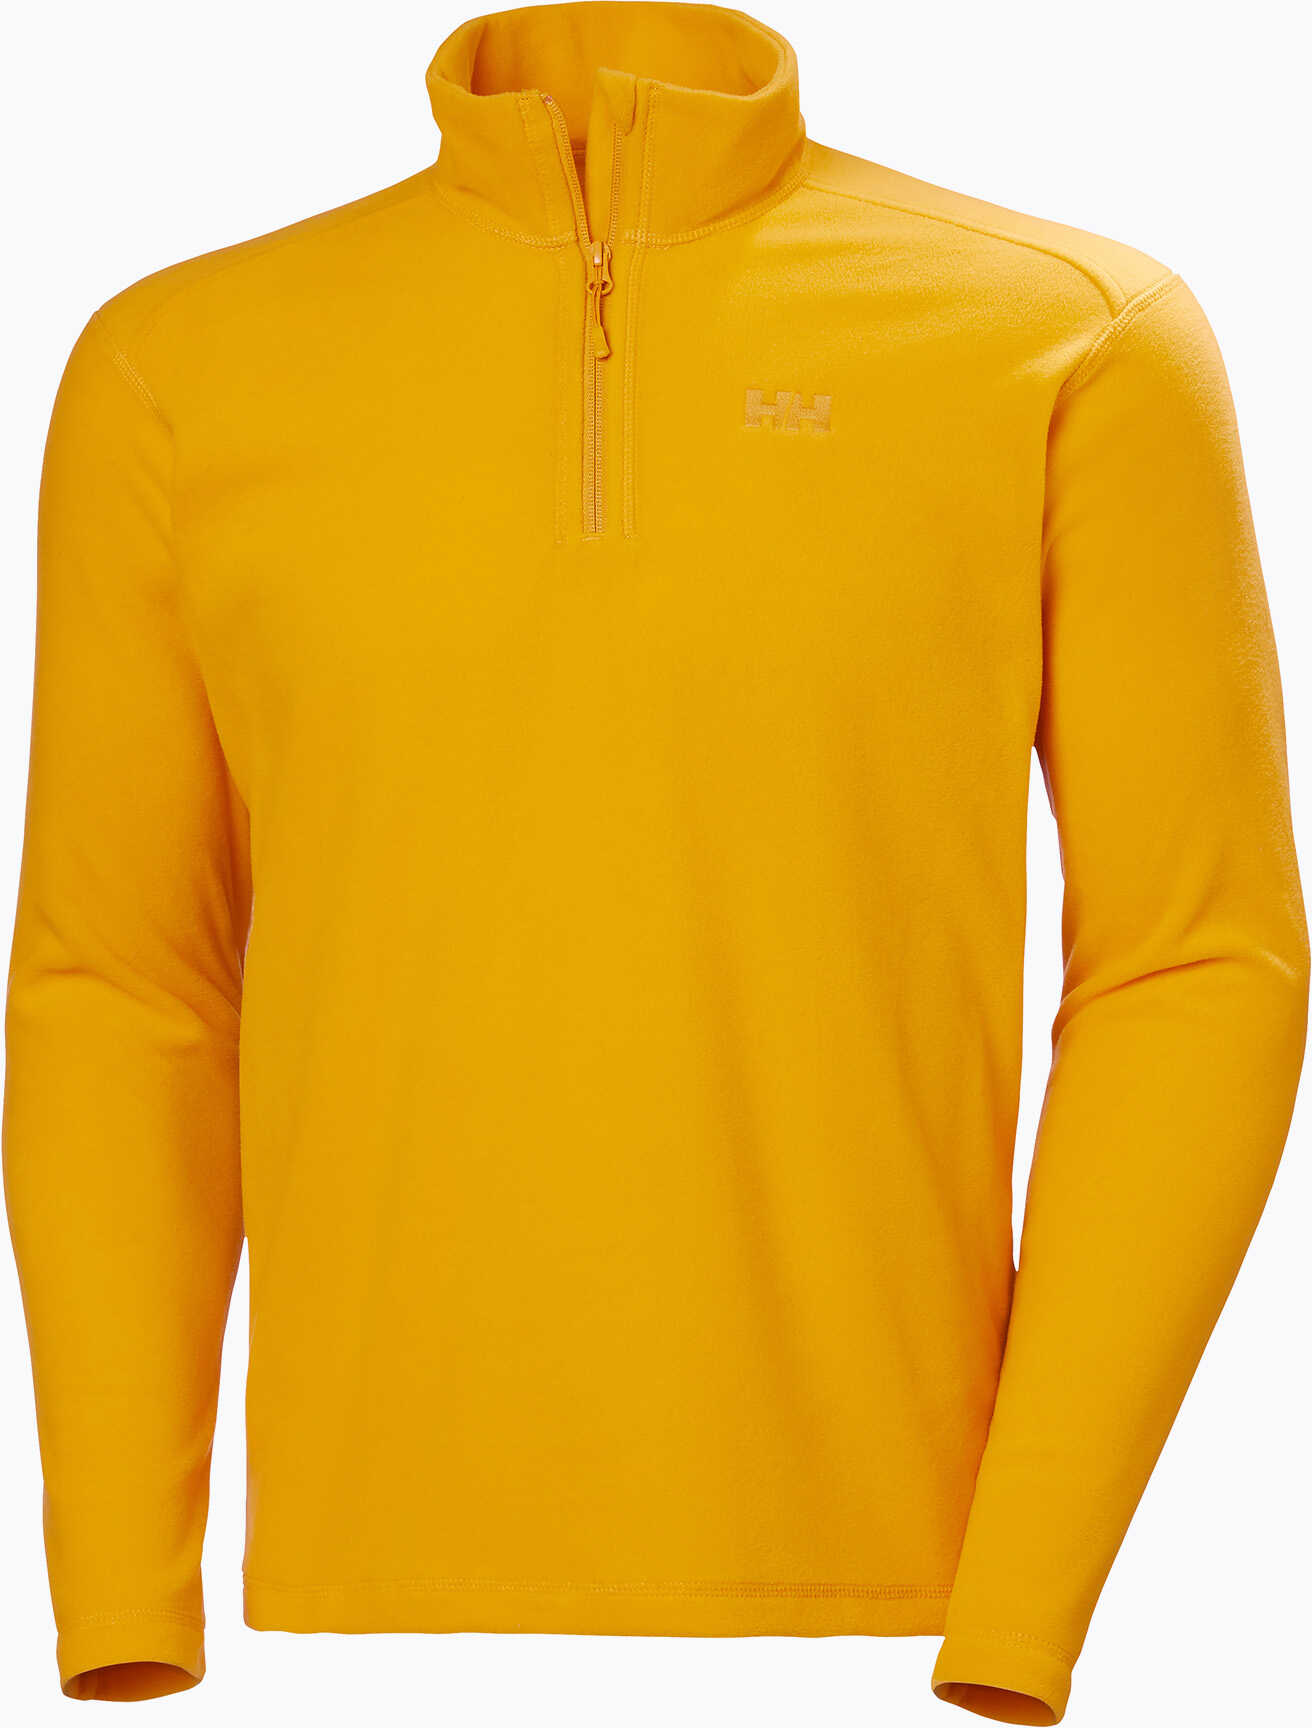 Bluza polarowa męska Helly Hansen Daybreaker 1/2 Zip 328 żółta 50844 WYSYŁKA W 24H 30 DNI NA ZWROT